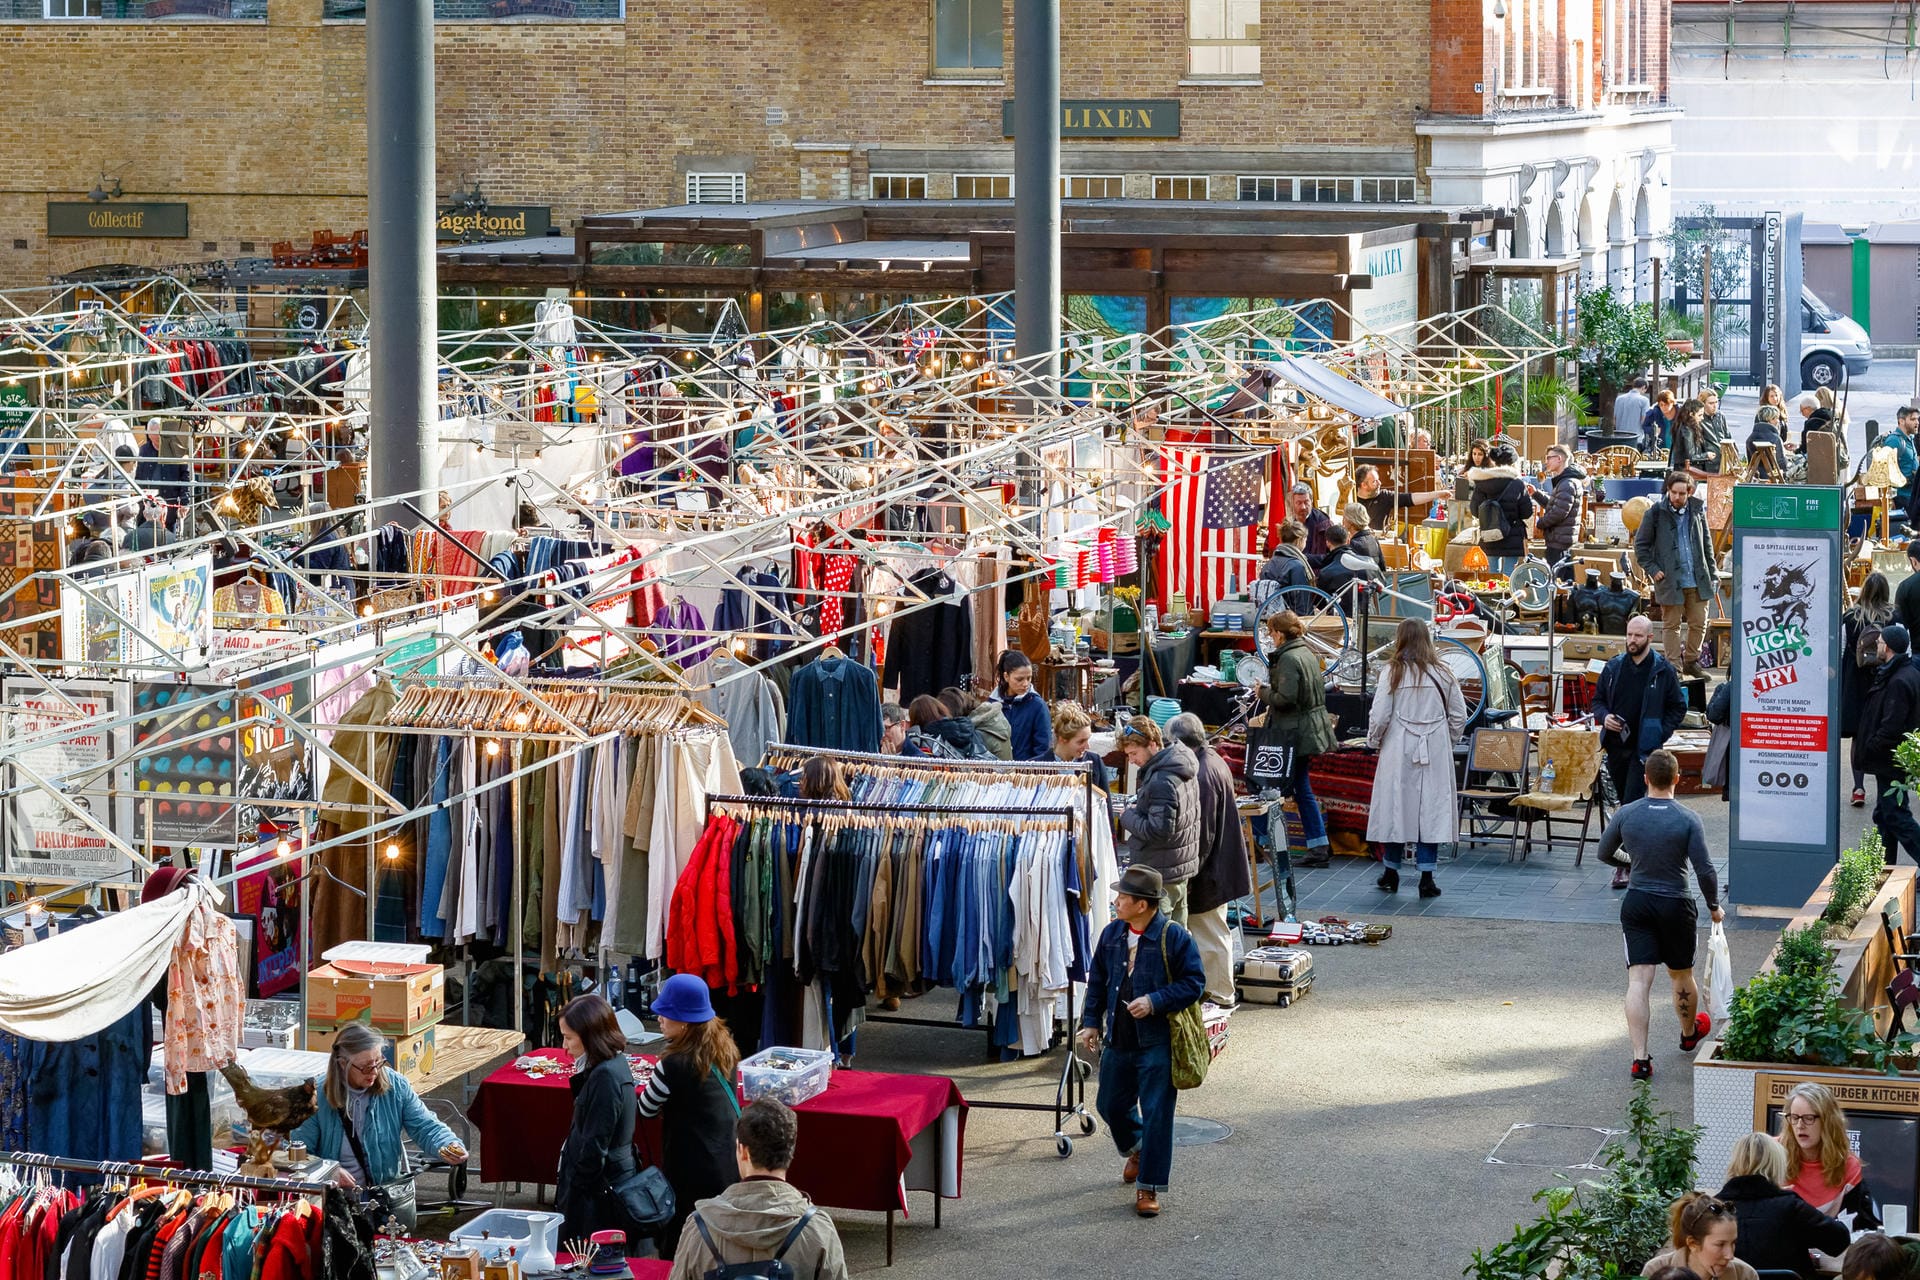 Old Spitalfields Market: In einem viktorianischem Backsteingebäude liegt der Old Spitalfields Market, der vor allem hochwertige Kleidung anbietet.